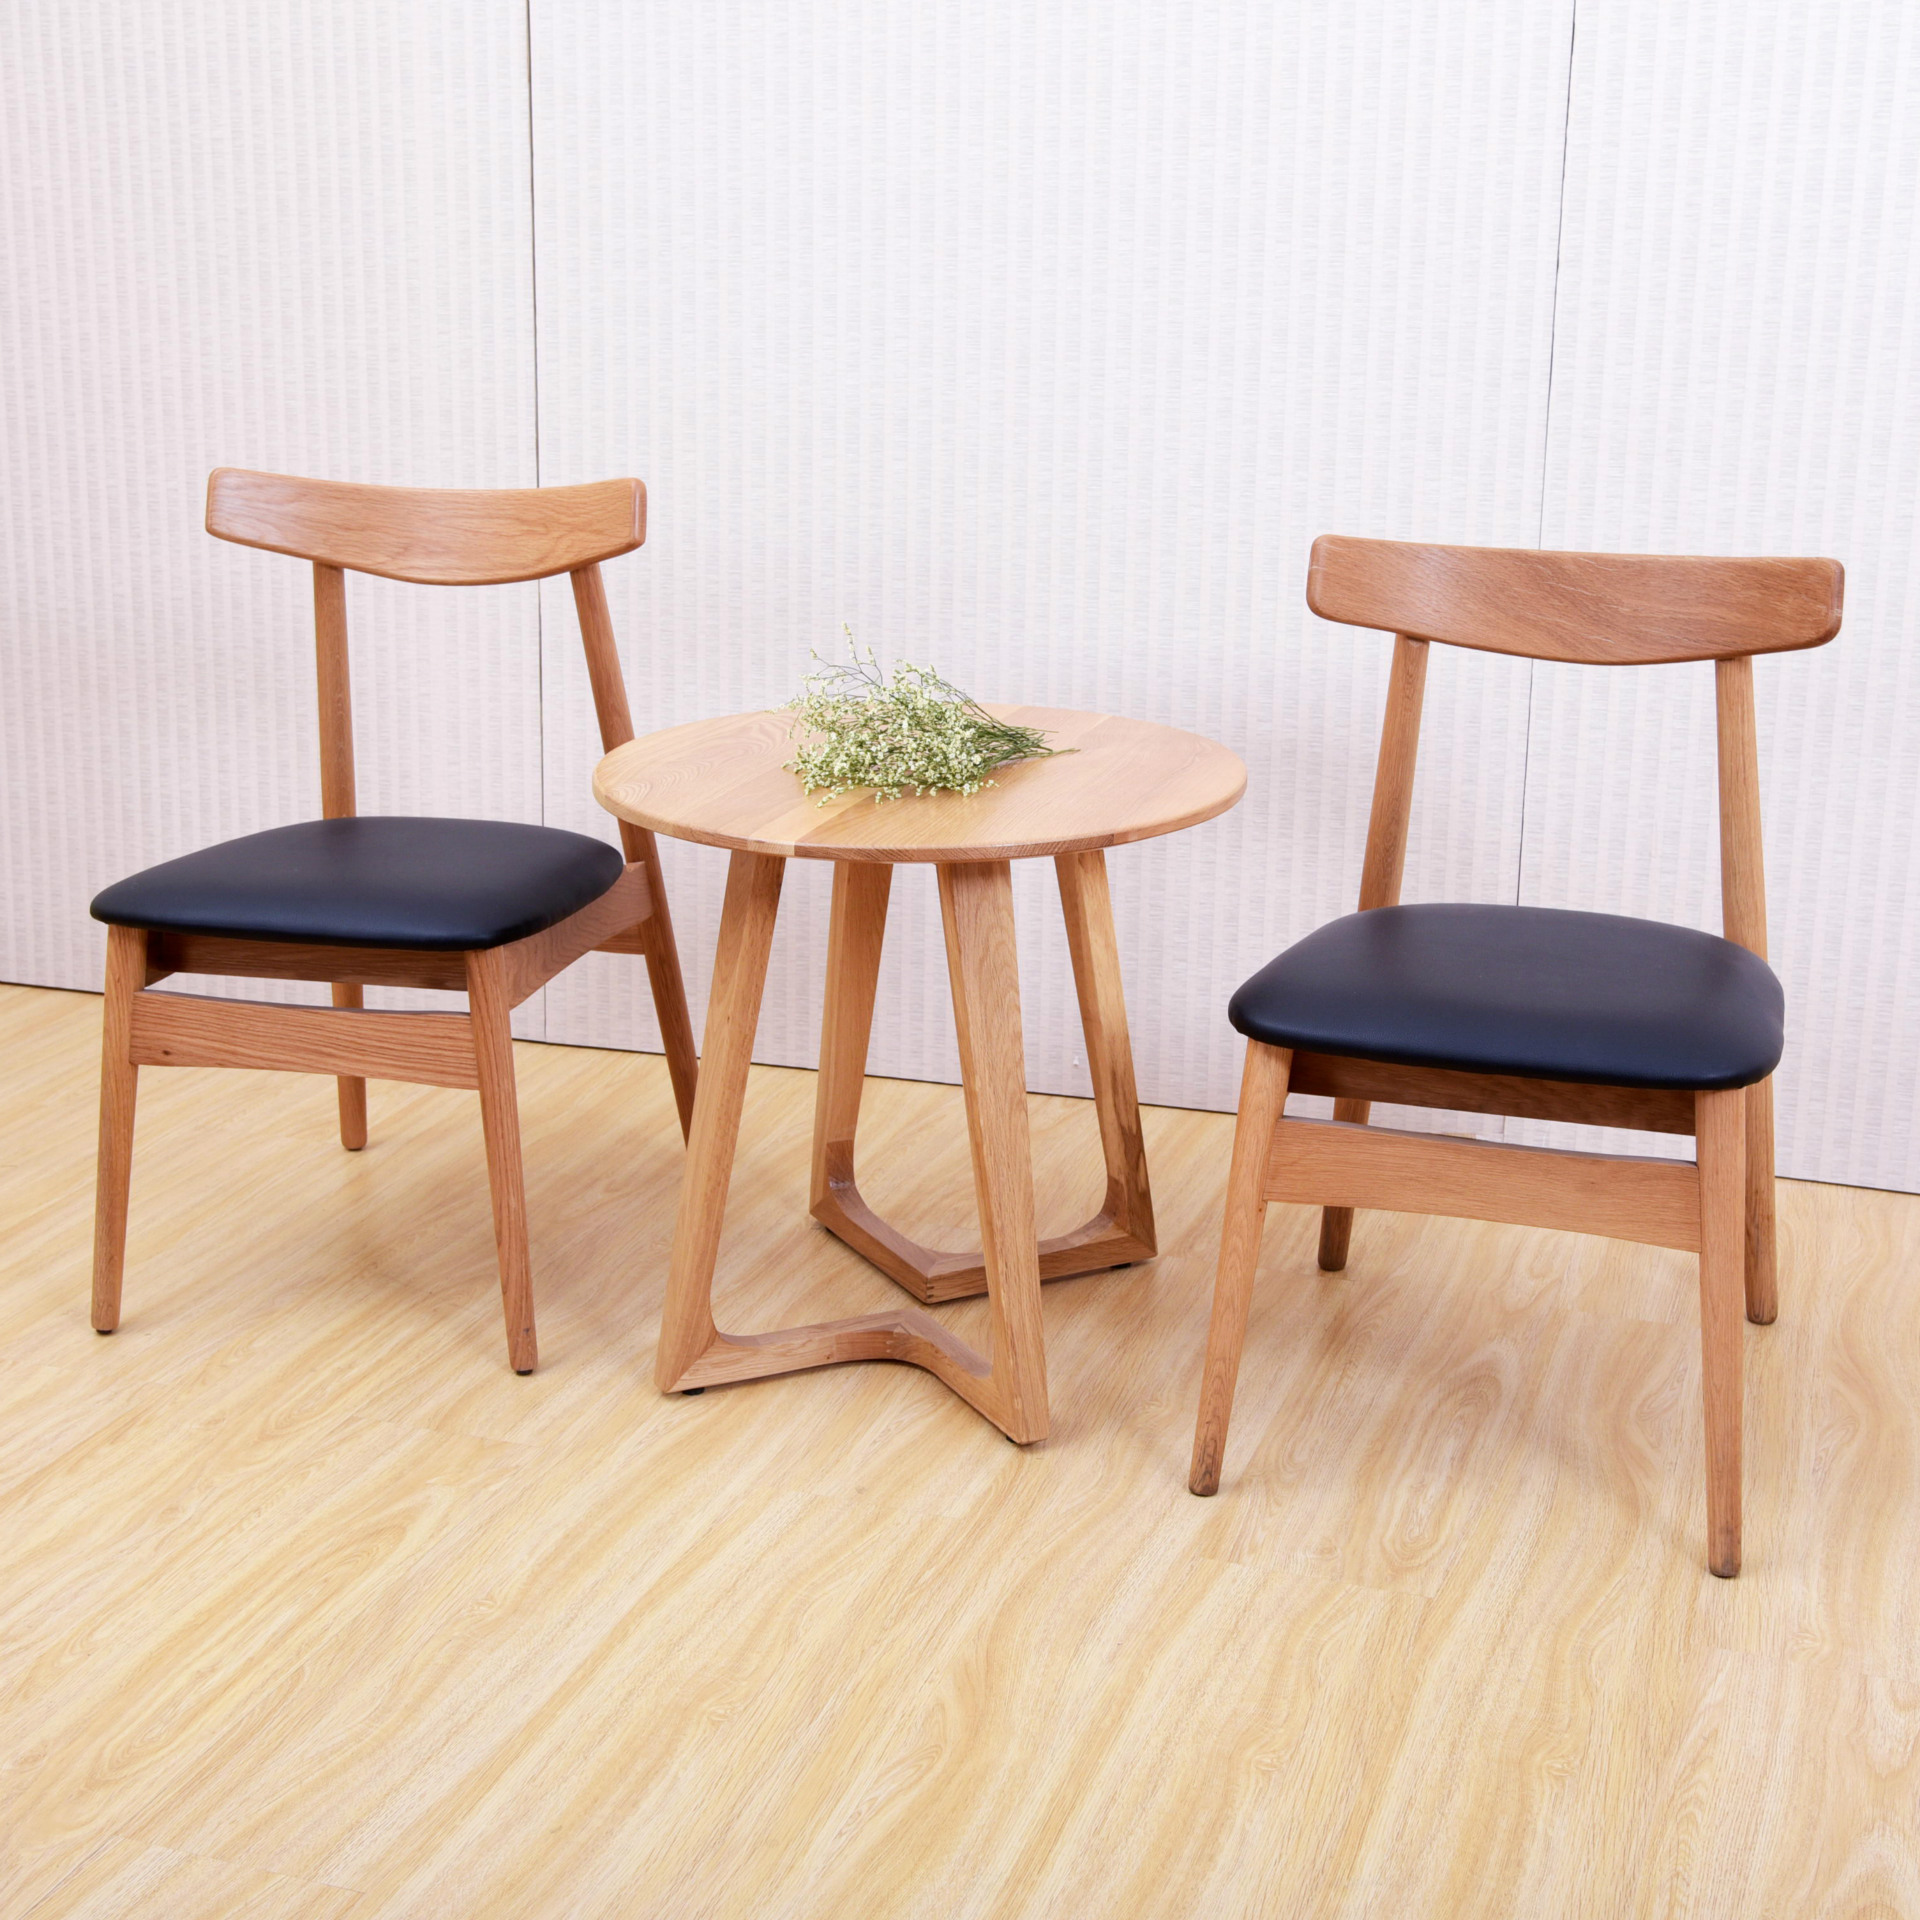 梨榆美国纯实木进口餐椅 餐桌组合 北美简约时尚咖啡椅子